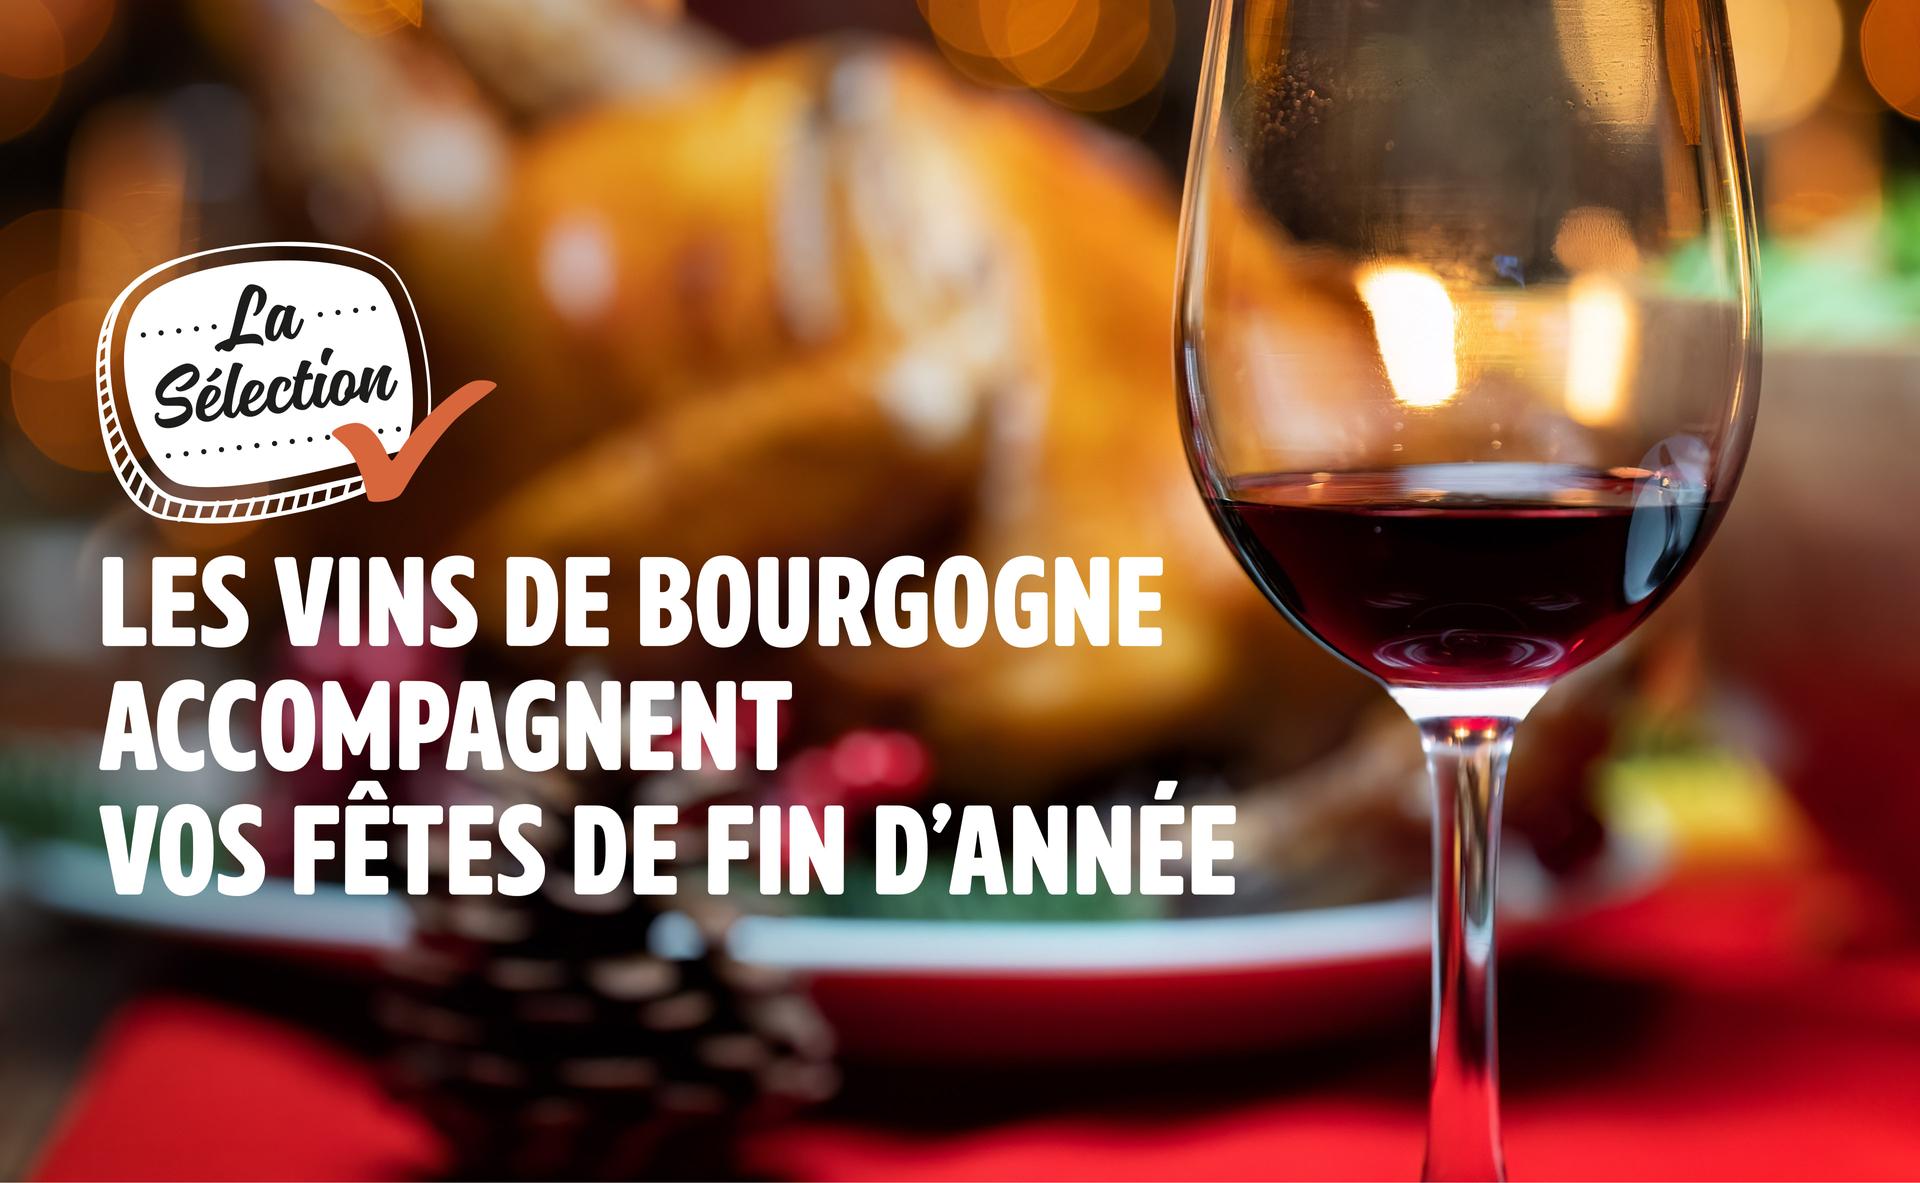 Les vins de Bourgogne accompagnent vos fêtes de fin d’année